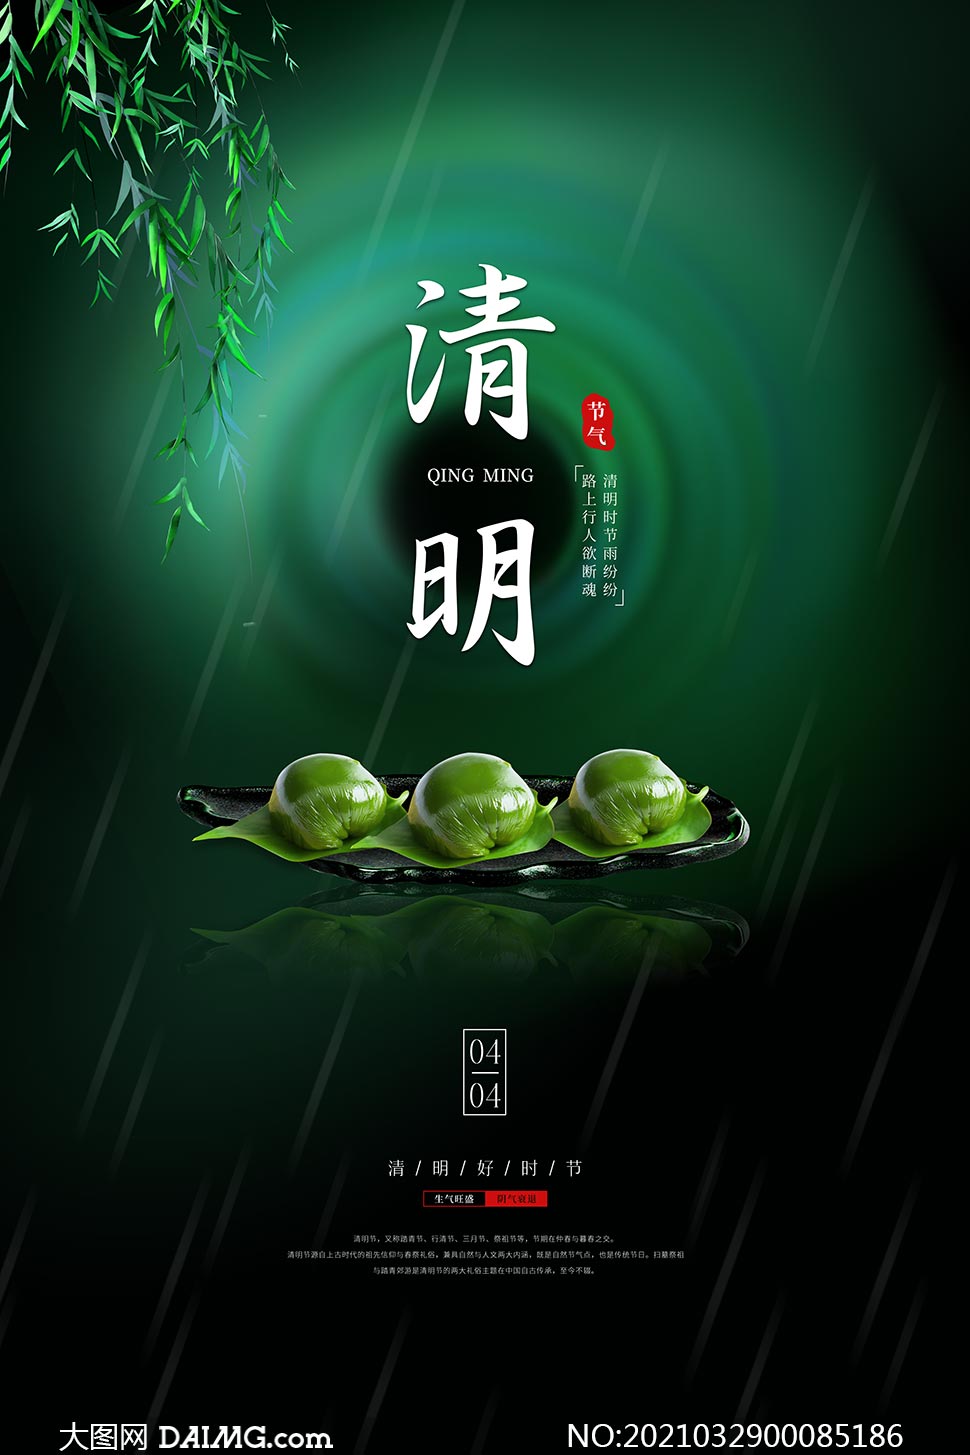 清明节吃青团主题海报设计psd素材